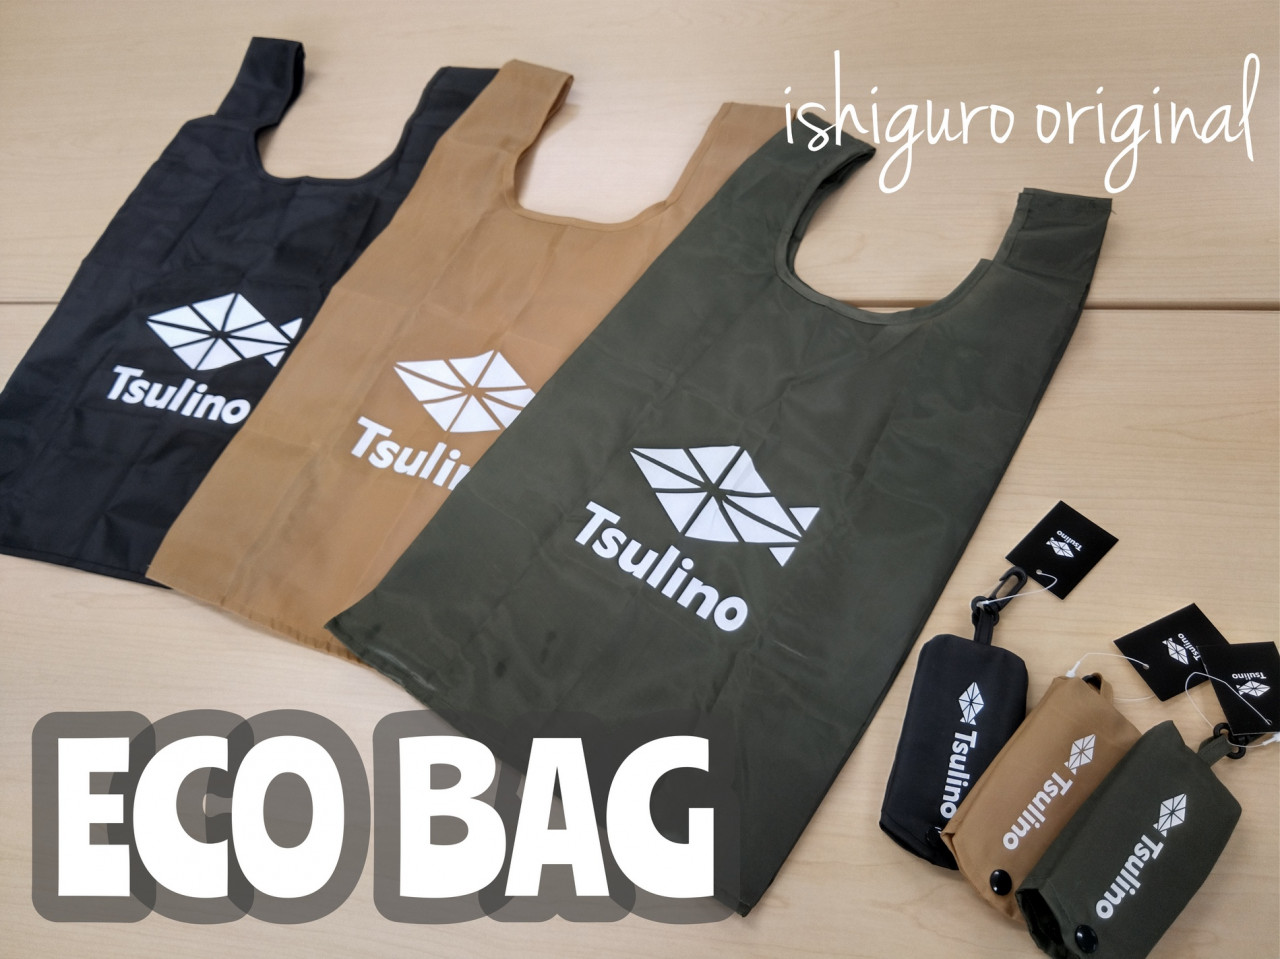 レジ袋有料化 Tsulino Ecobag エコバッグ 発売します イシグロ バイヤー 釣具のイシグロ 釣り情報サイト